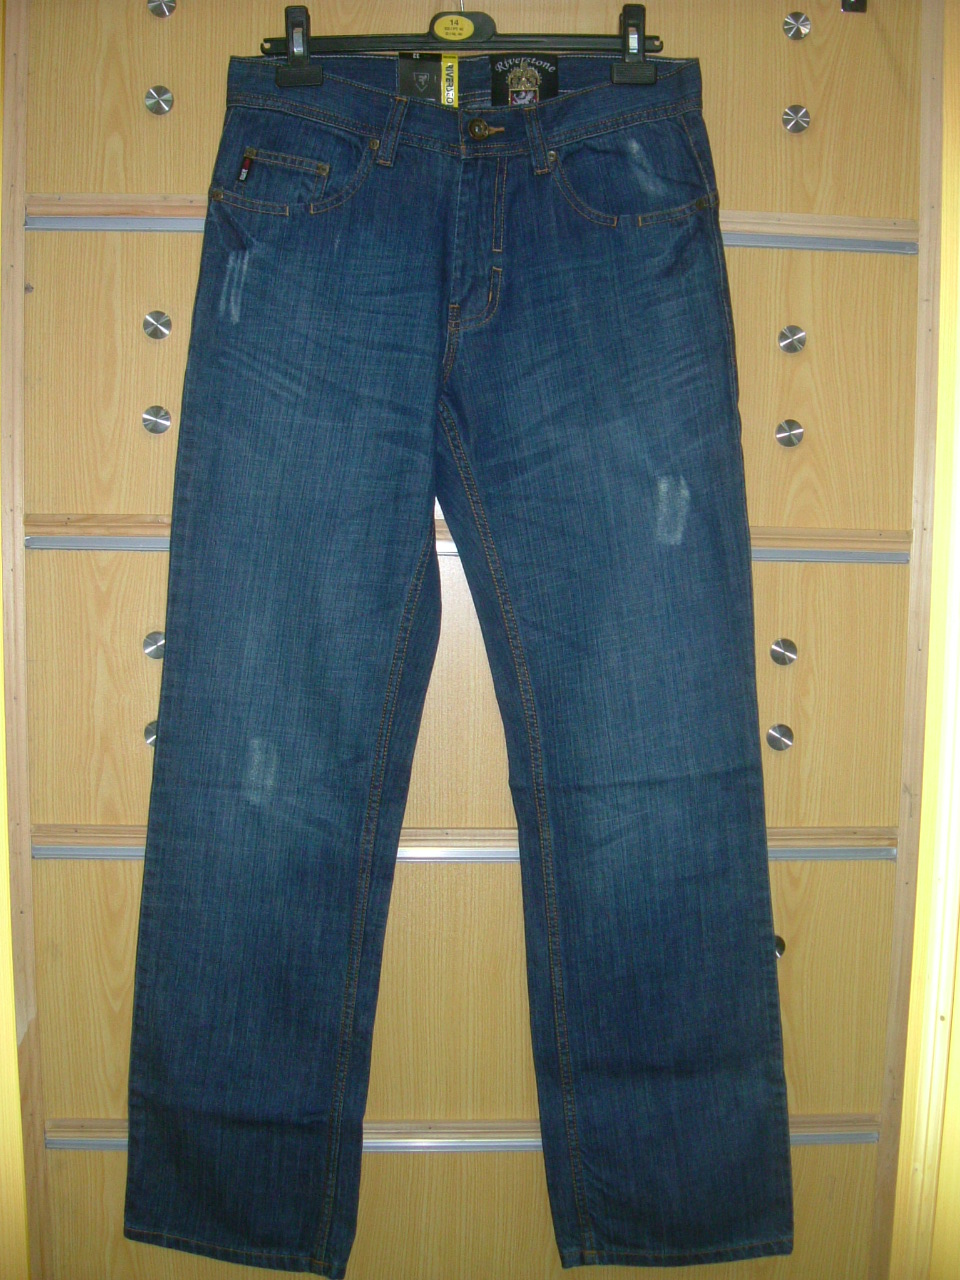 Jean Junction: Front Fancy Blue Jeans